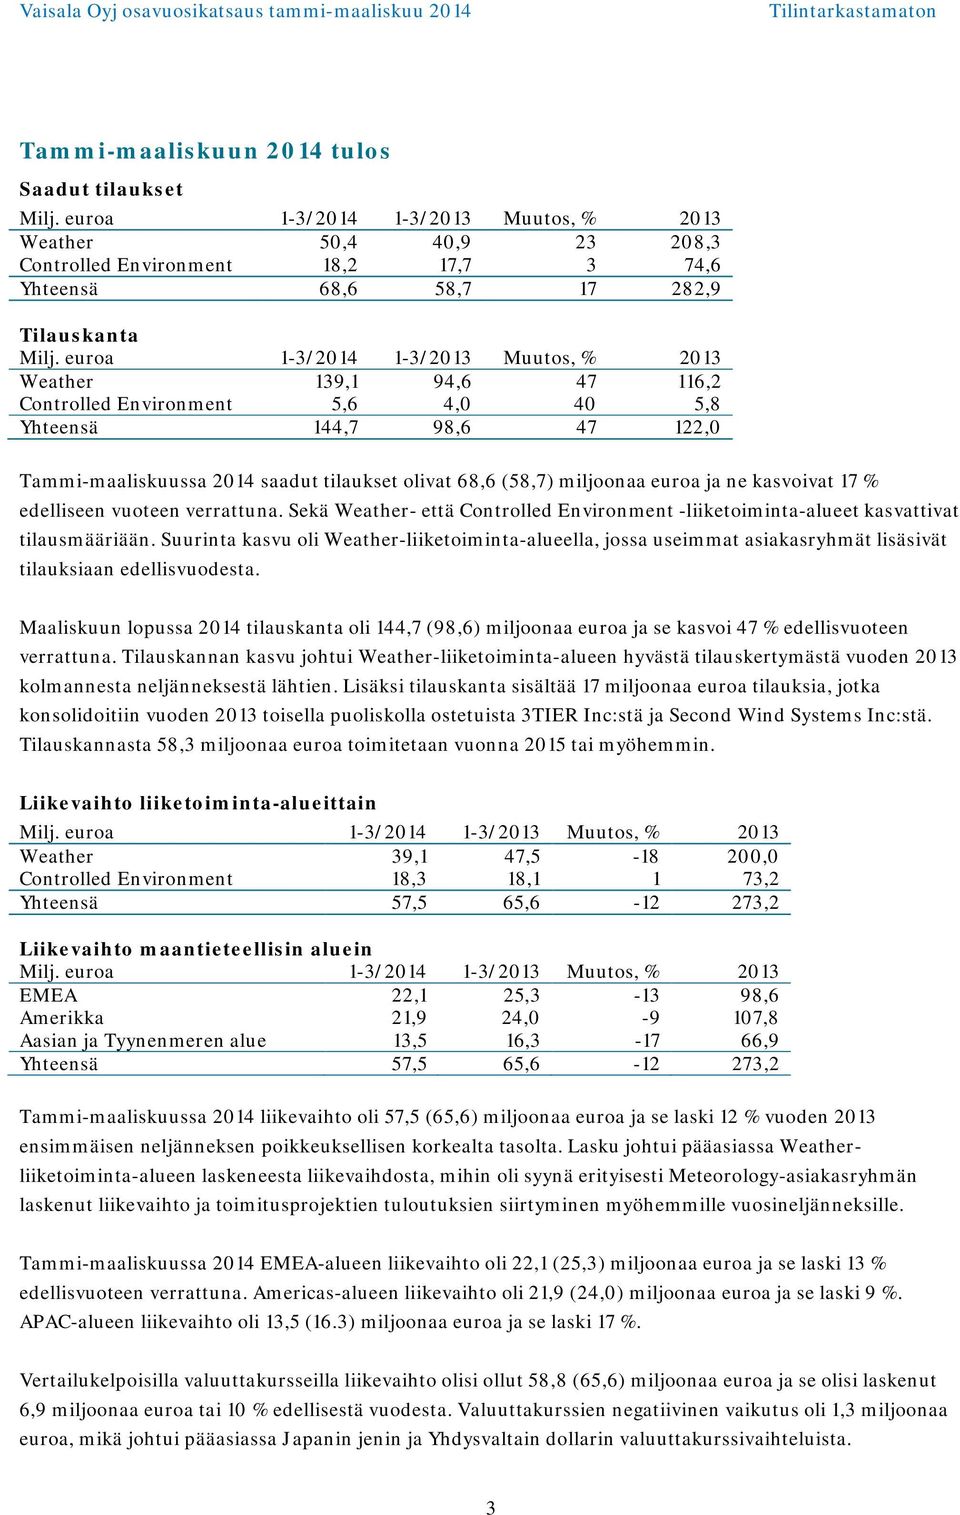 euroa 1-3/2014 1-3/2013 Muutos, % 2013 Weather 139,1 94,6 47 116,2 Controlled Environment 5,6 4,0 40 5,8 Yhteensä 144,7 98,6 47 122,0 Tammi-maaliskuussa 2014 saadut tilaukset olivat 68,6 (58,7)